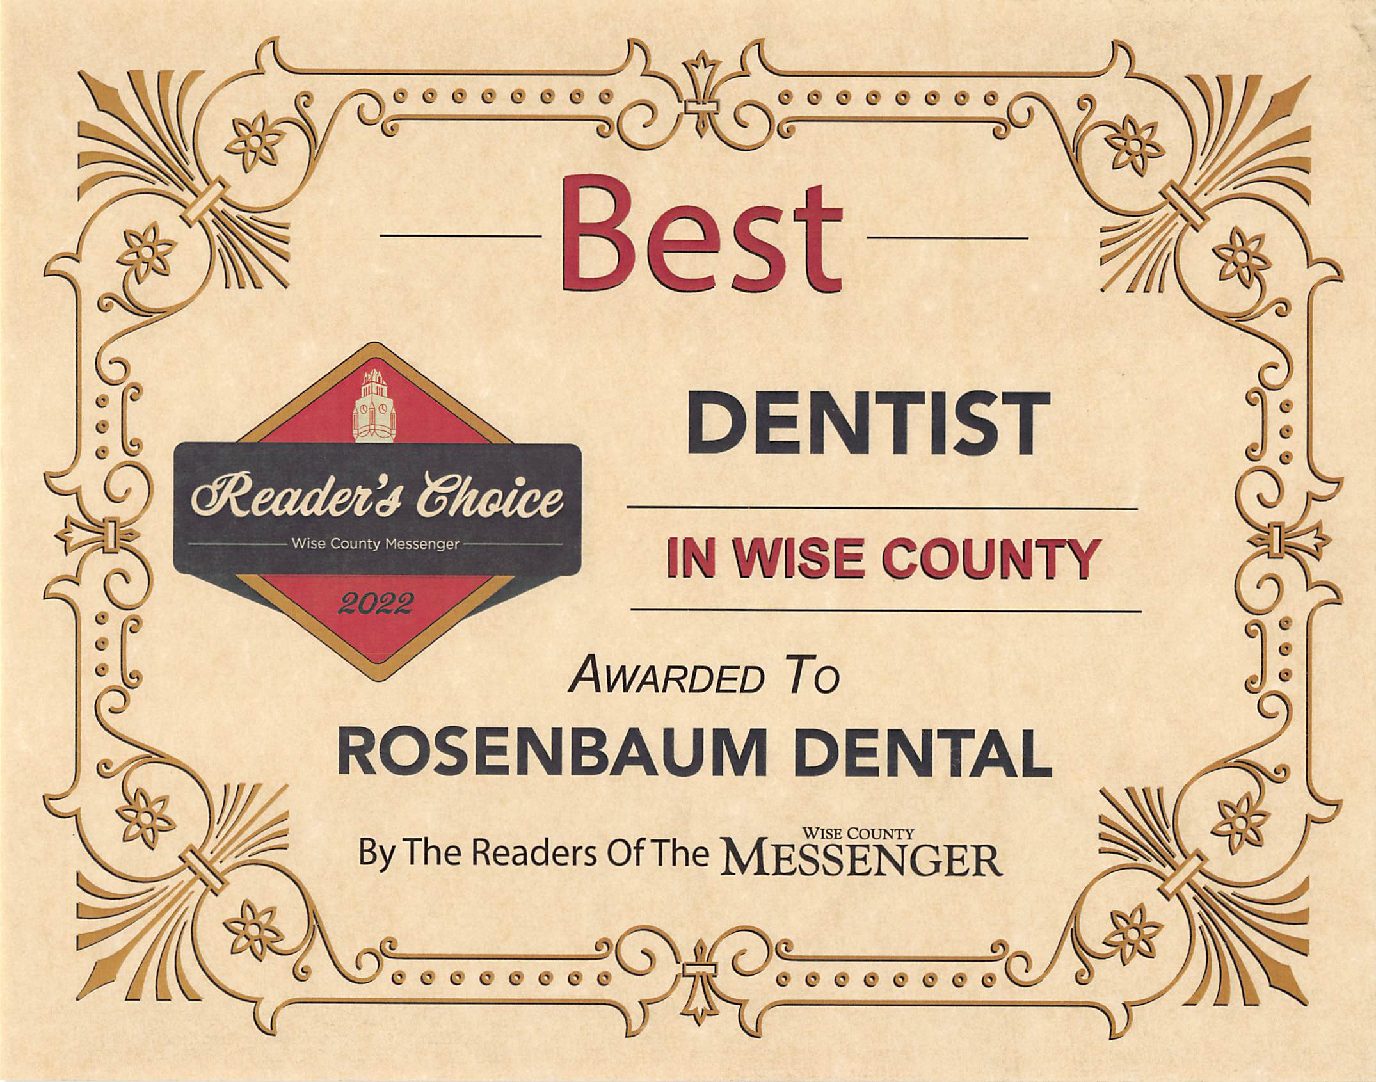 Best Dentist in Wise County 2022 | Rosenbaum Dental